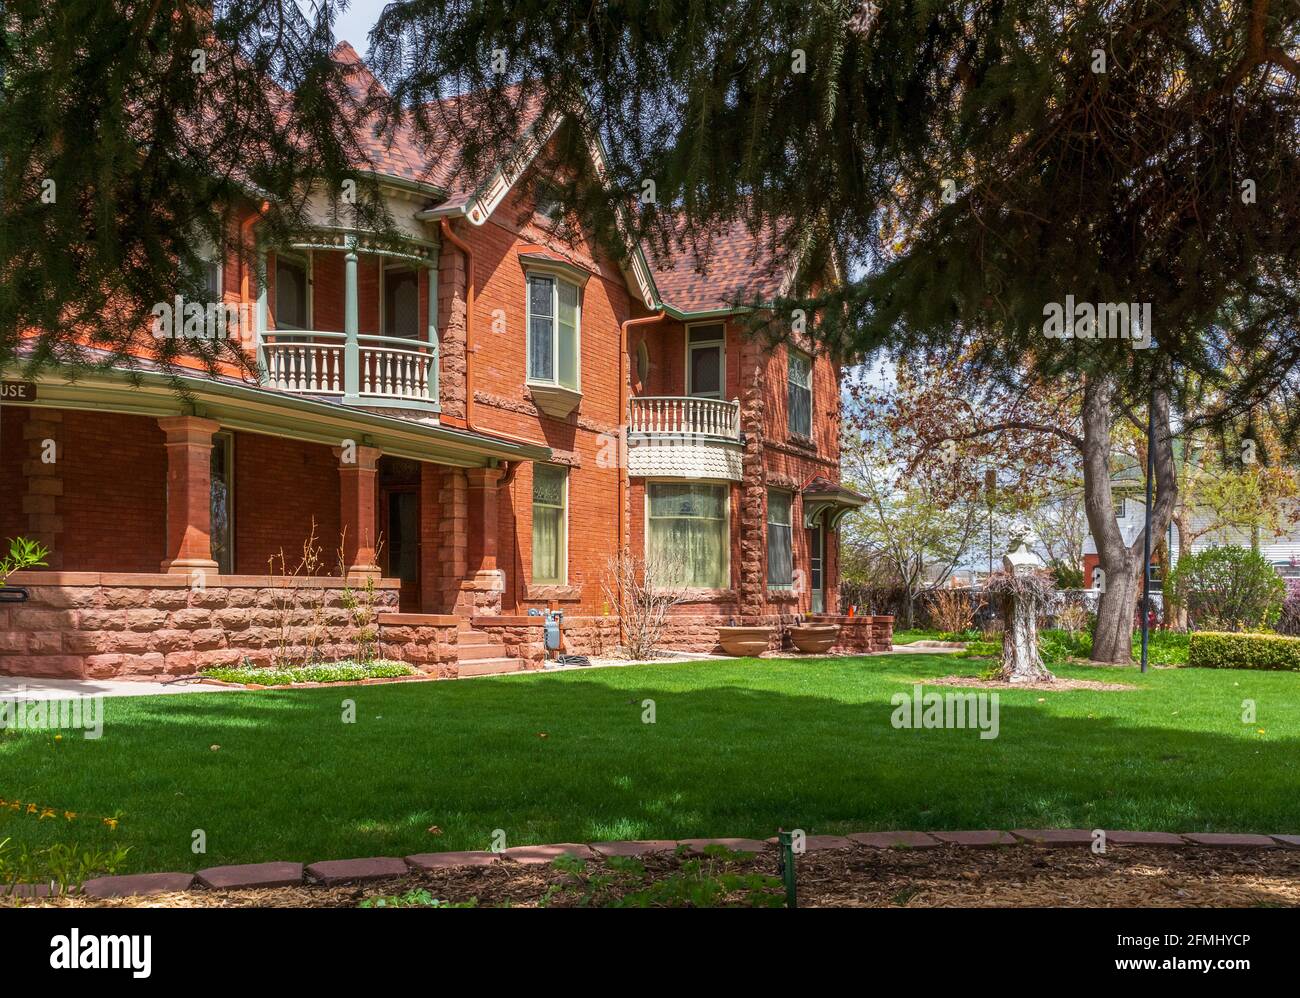 Callahan House - 1892 maison de style Queen Anne, lieu d'événements populaire, avec boiseries ornées et un jardin Italianate à Longmont, Colorado Banque D'Images